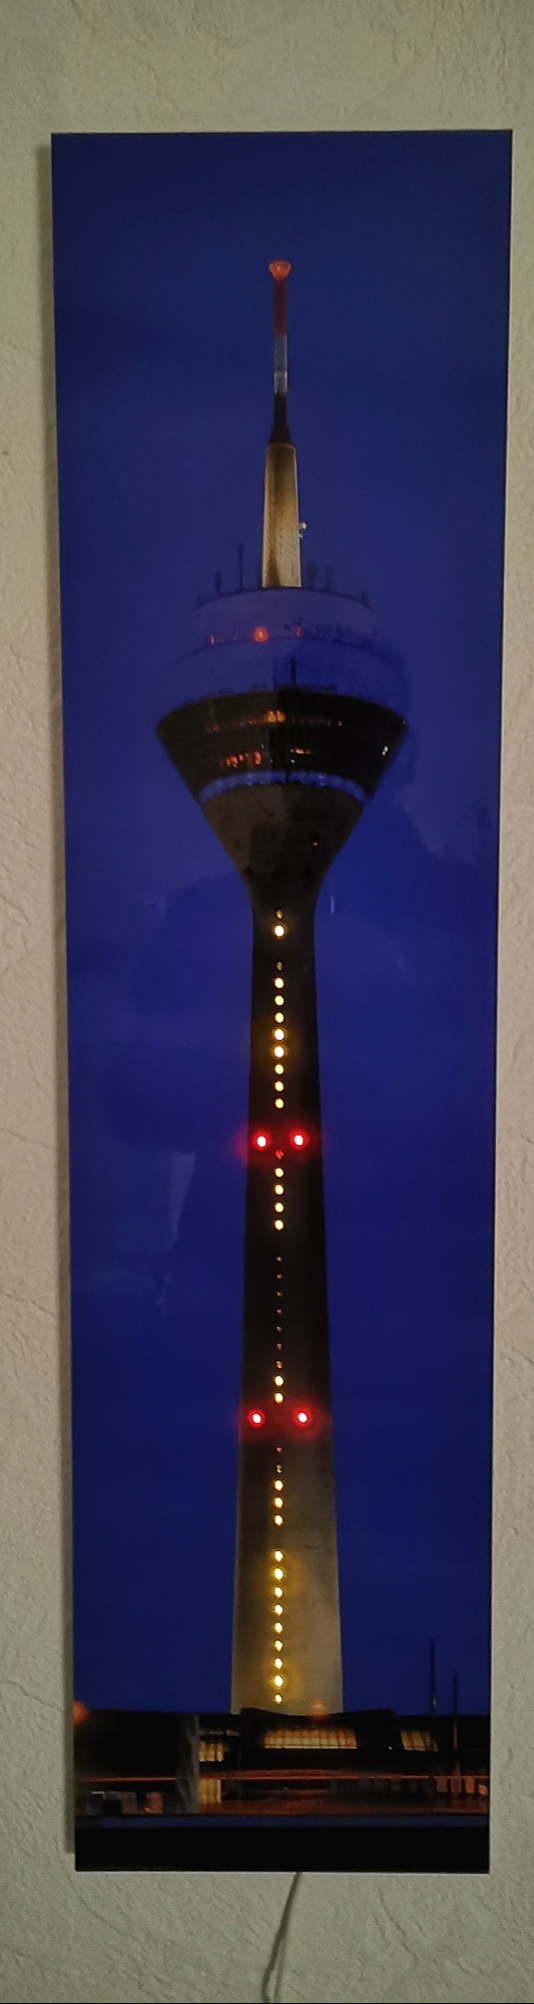 Düsseldorfer Rheinturmuhr als Hochglanz Premium Foto in Acryl gegossen mit  LEDs versehen und program - Mikrocontroller.net